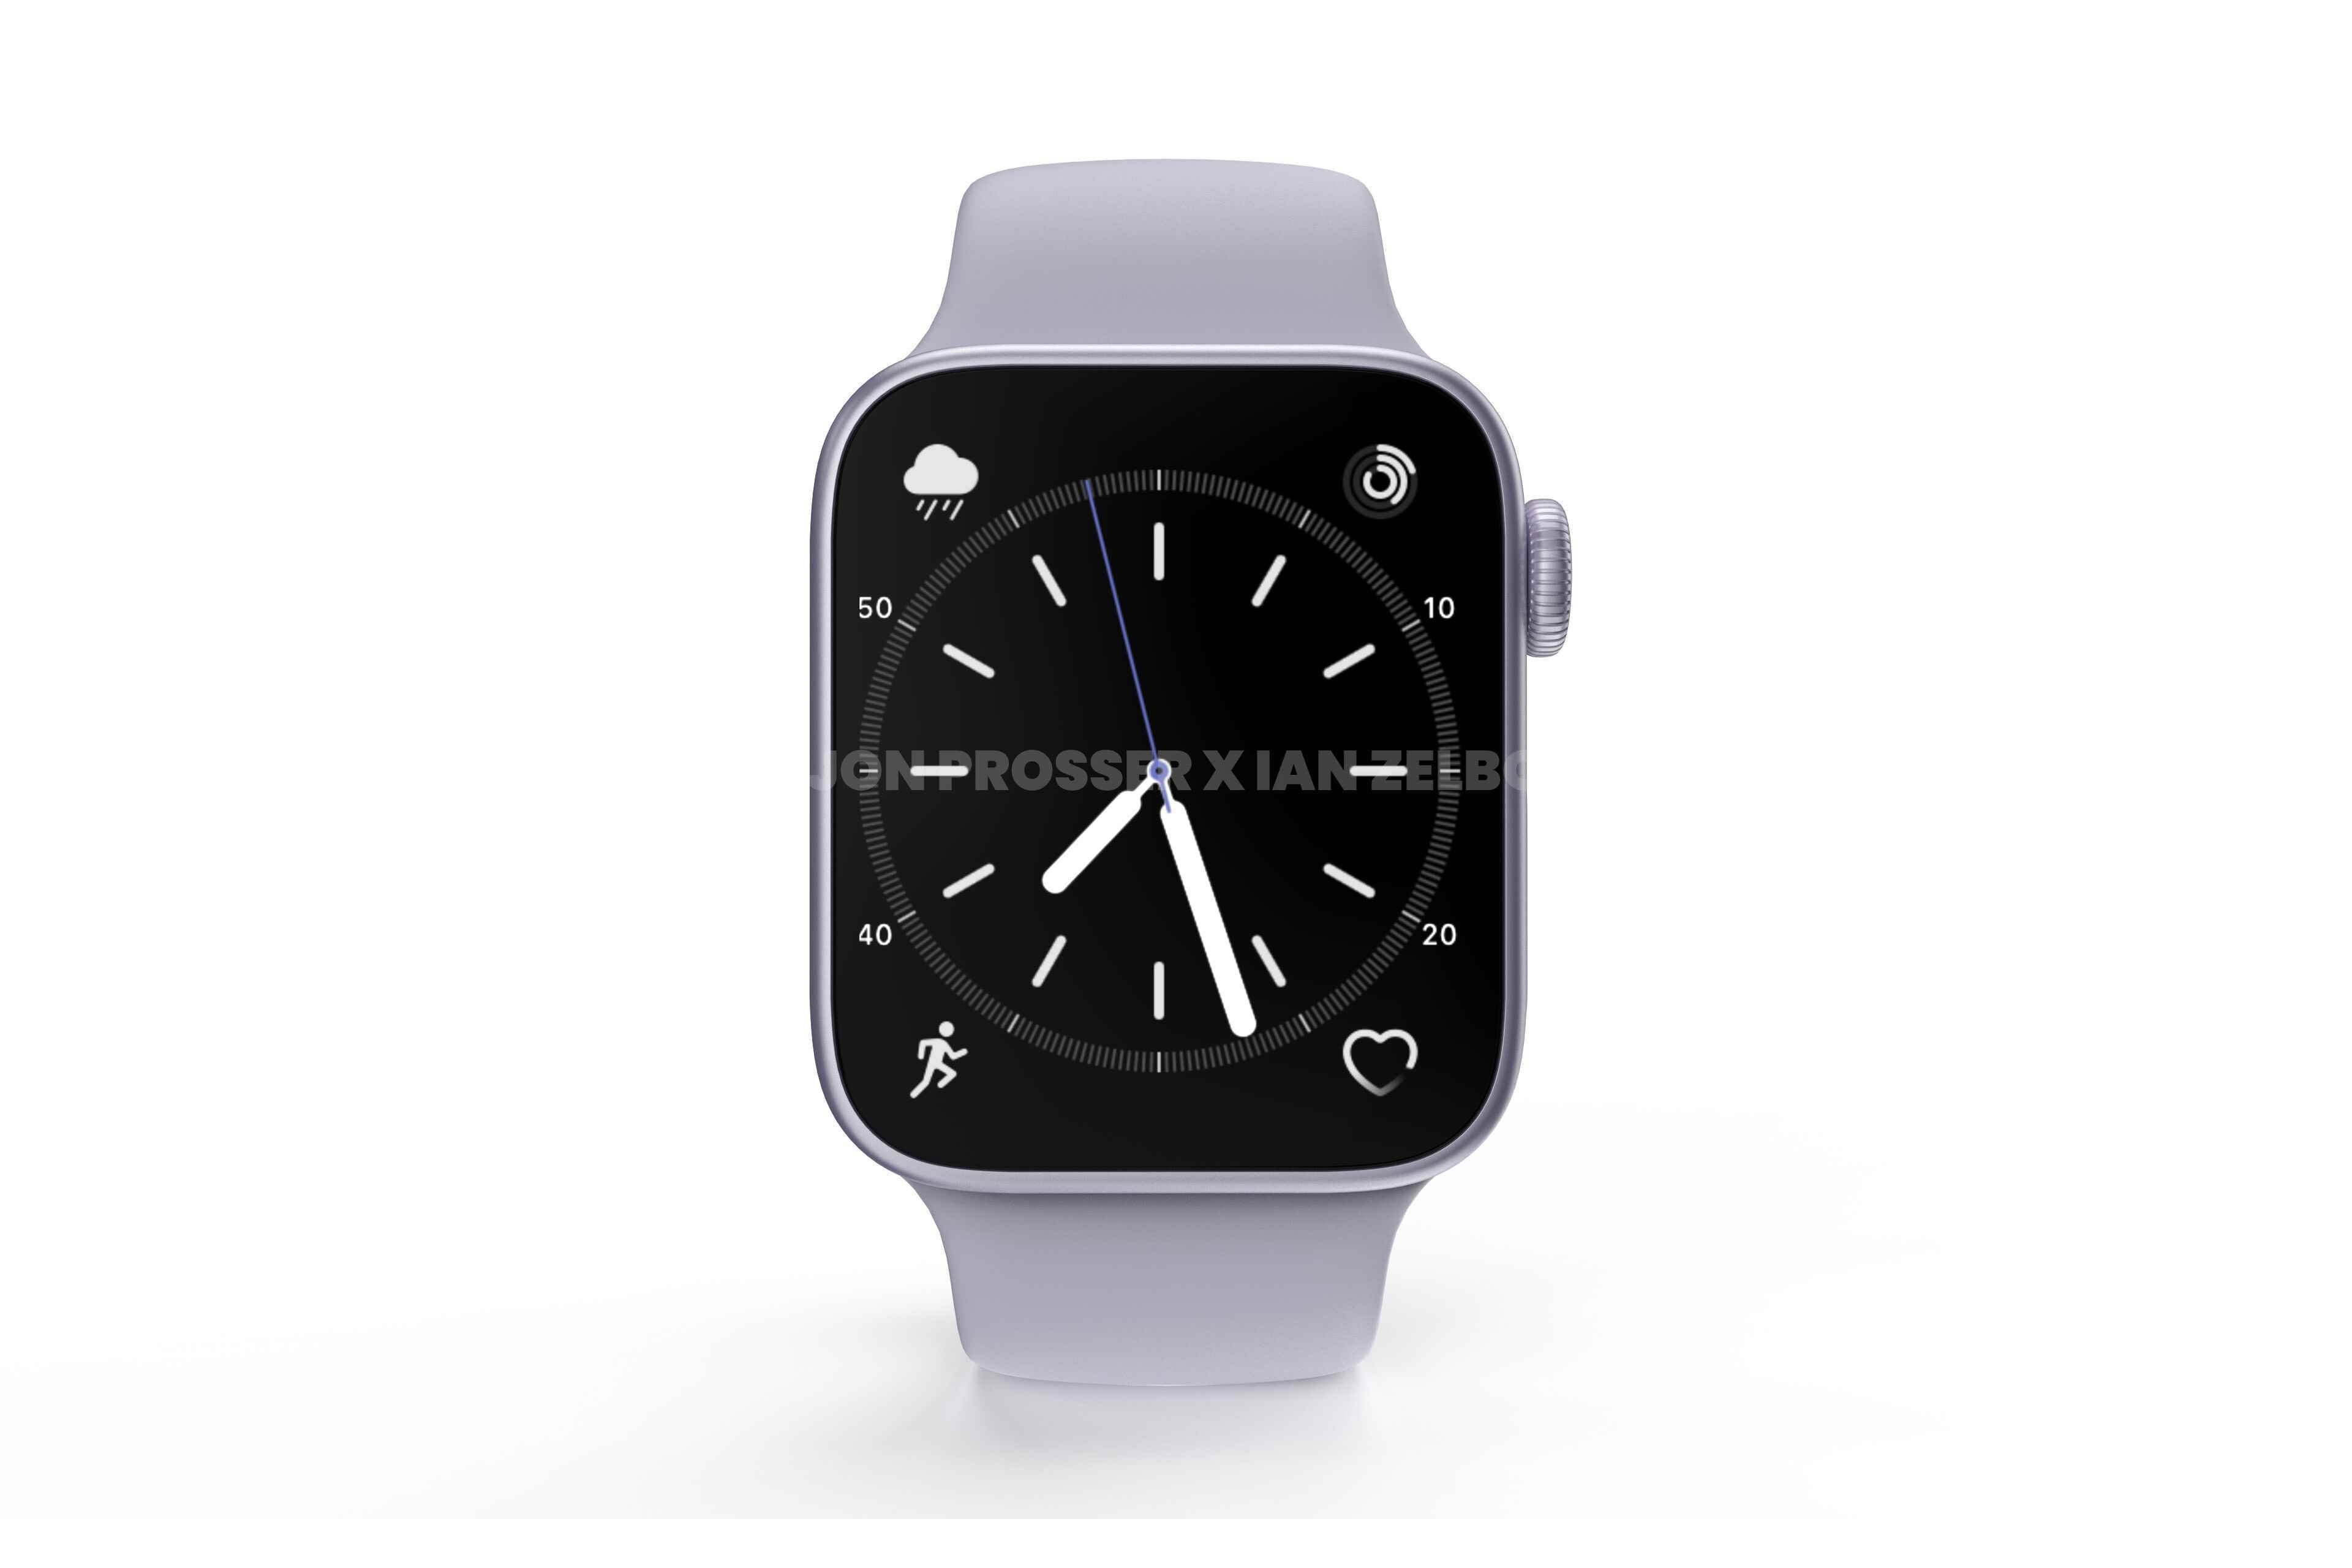 Sızan görüntüler, yeniden tasarlanan Apple Watch Series 8'e ilk bakışı sunuyor